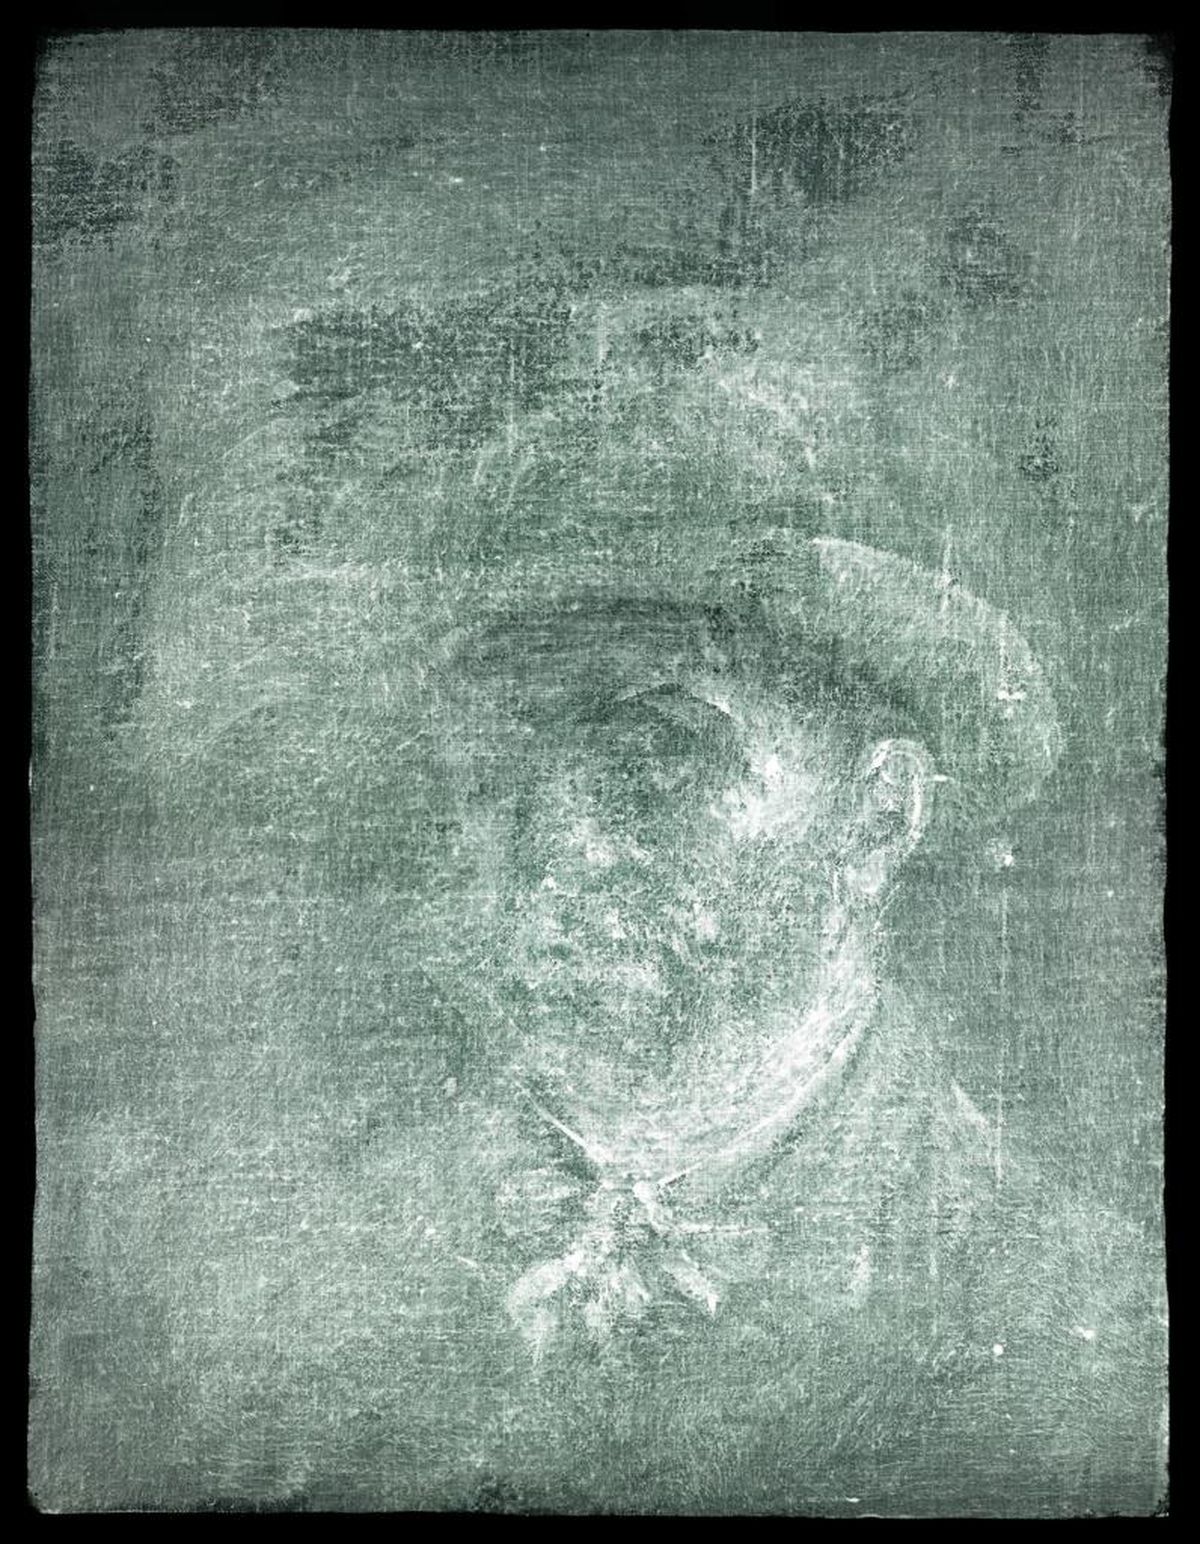 Autorretrato oculto de Van Gogh.